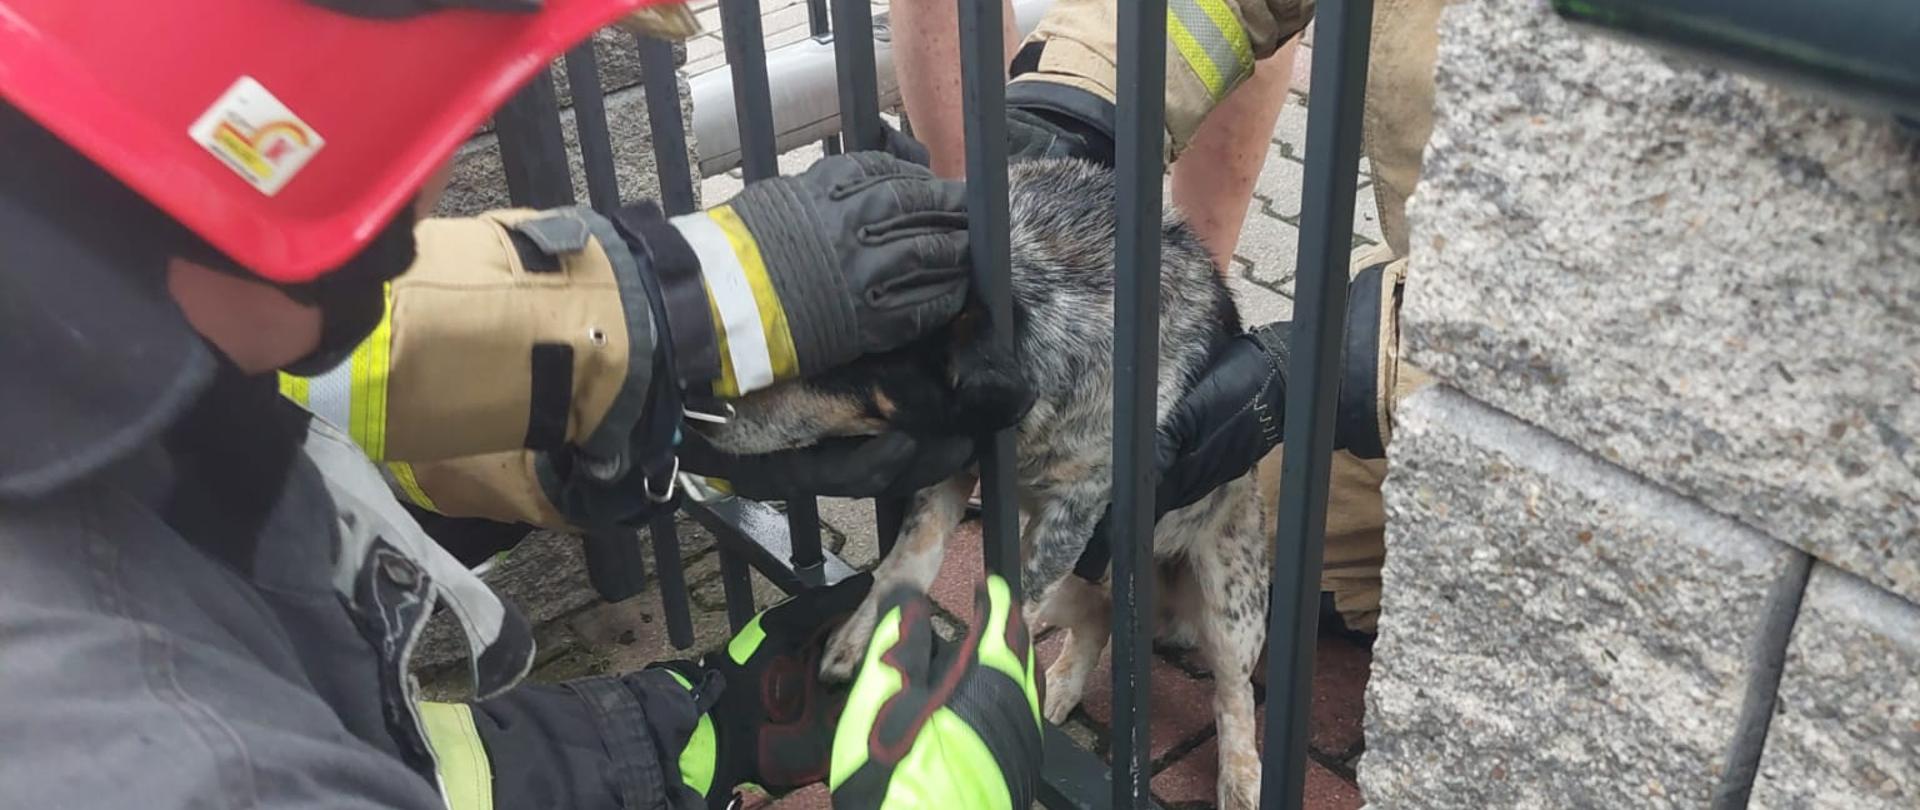 Na zdjęciu widać dwóch strażaków w umundurowaniu specjalnym z czerwonymi hełmami na głowach. Strażacy uwalniają domowego psa, który uwięziony jest między metalowymi słupkami ogrodzenia. 